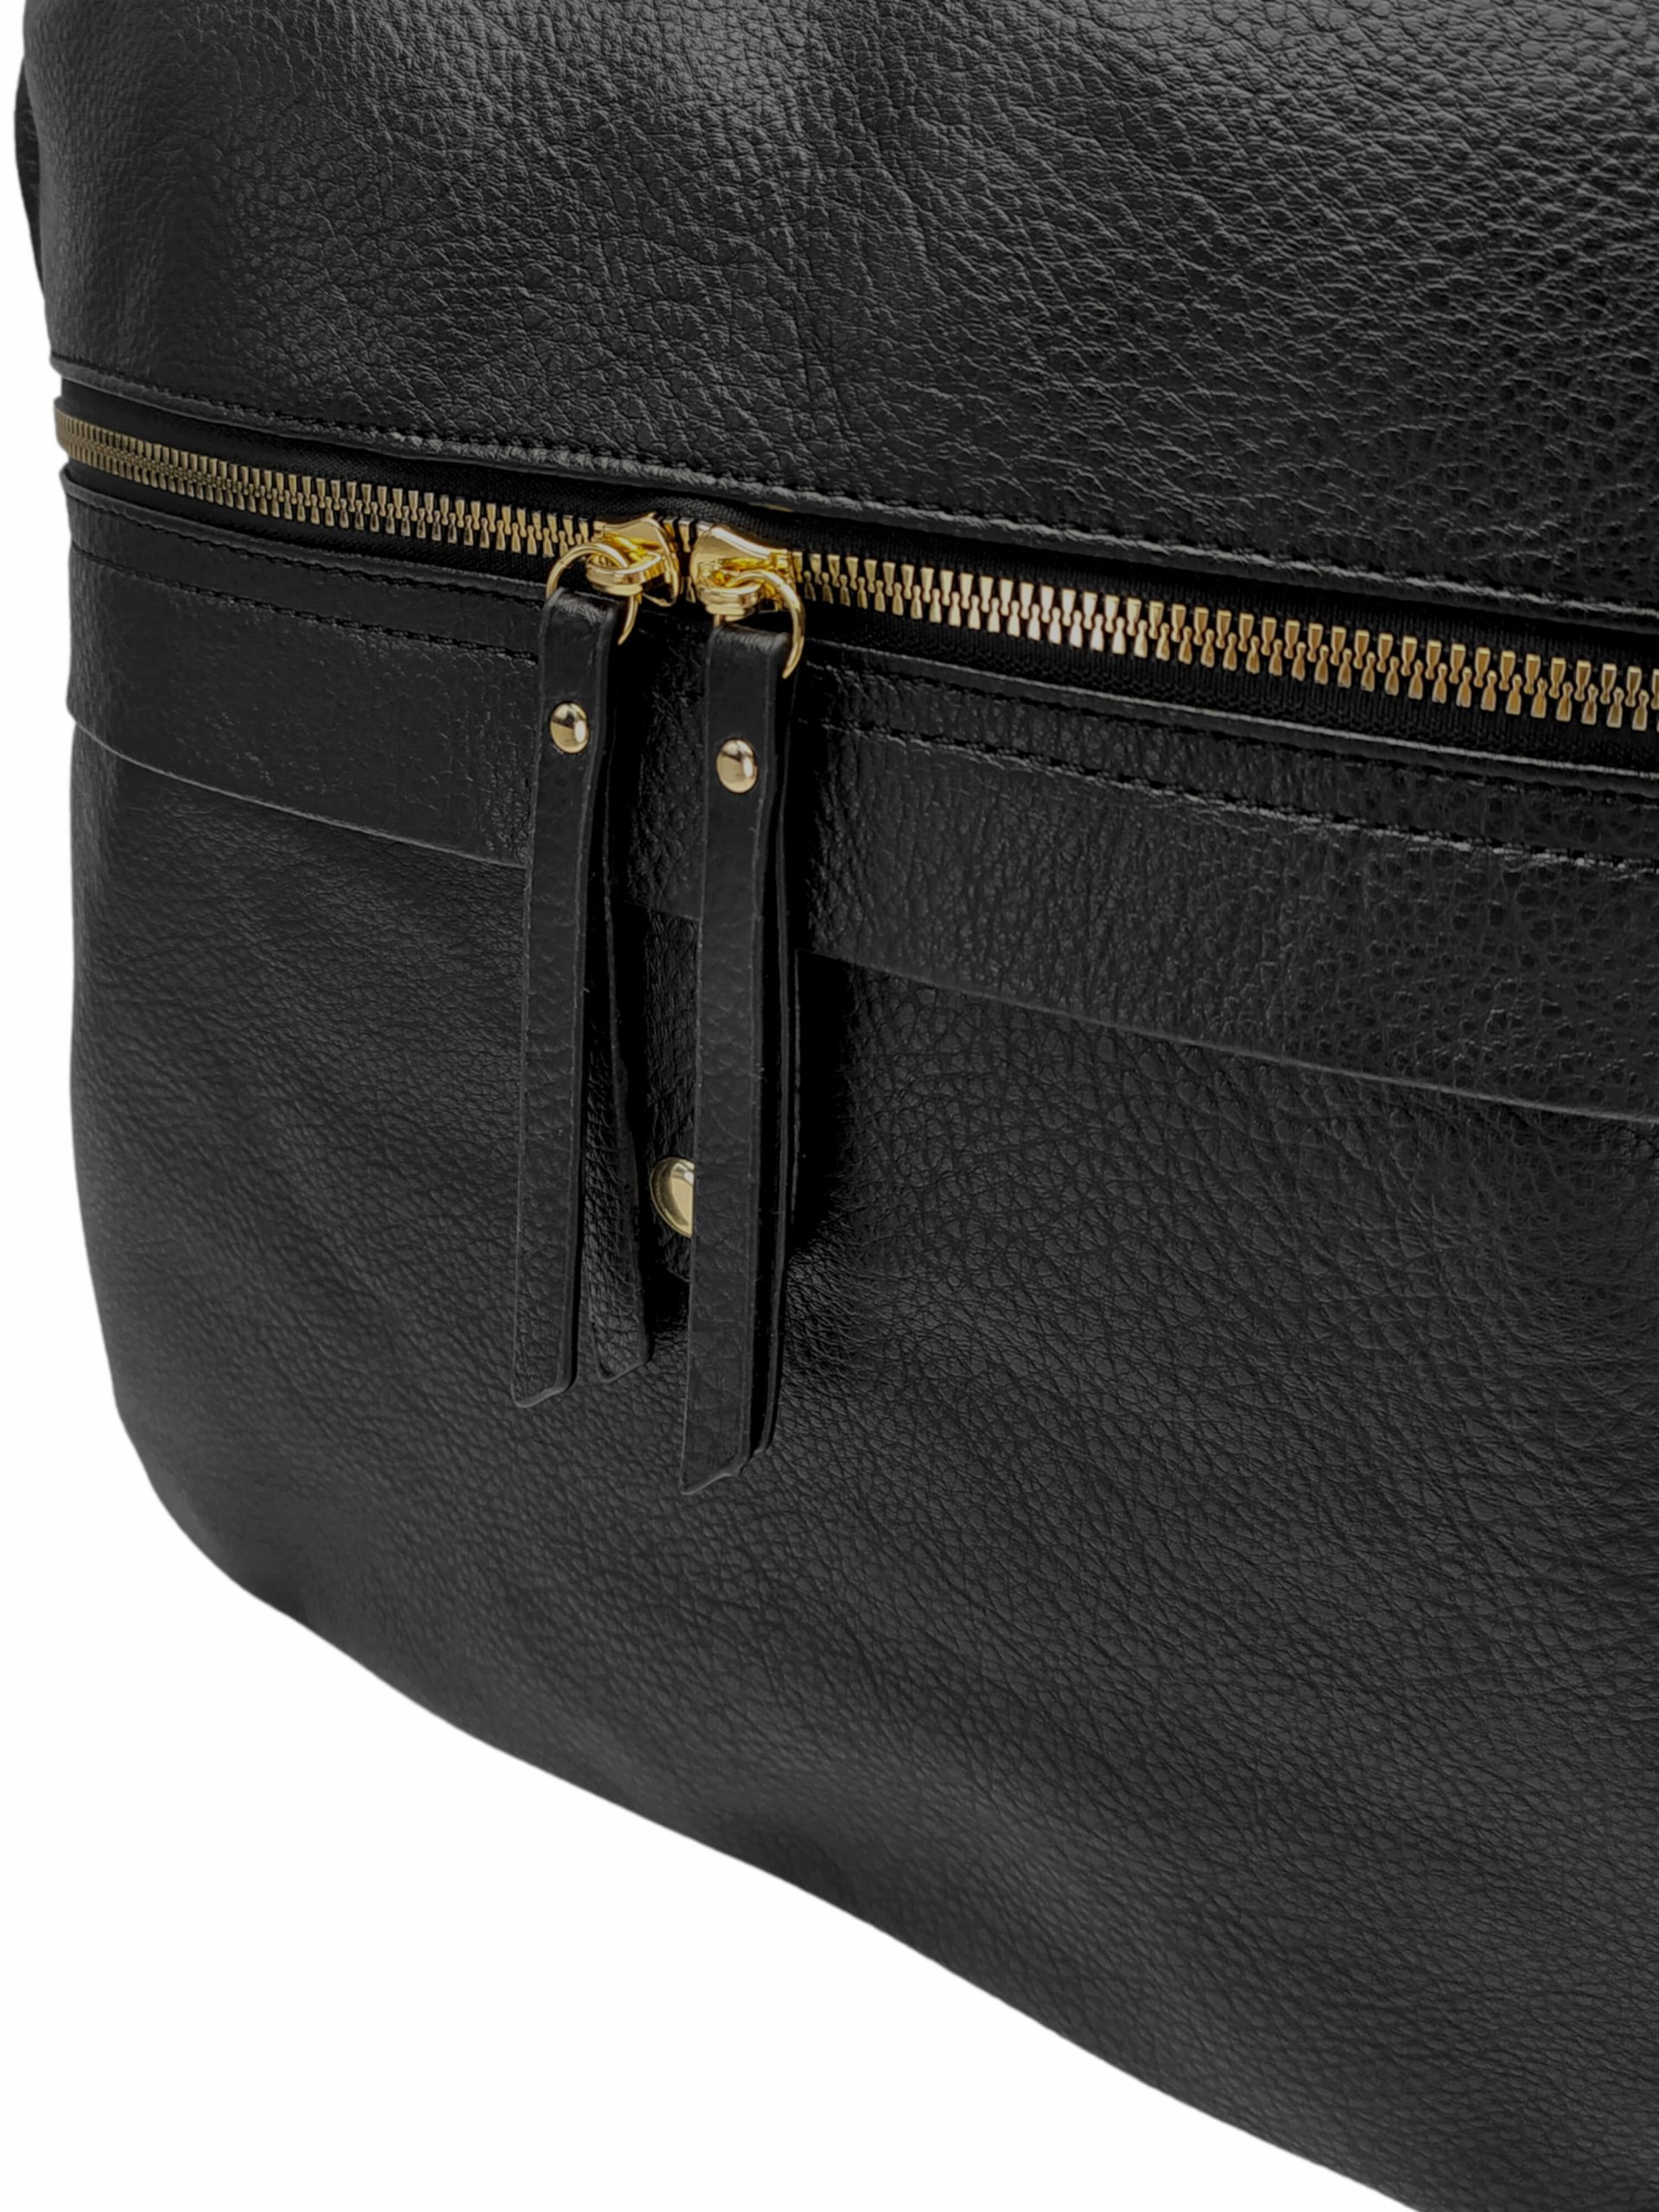 Velký černý kabelko-batoh 2v1 s kapsou, Int. Company, H23, detail kabelko-batohu